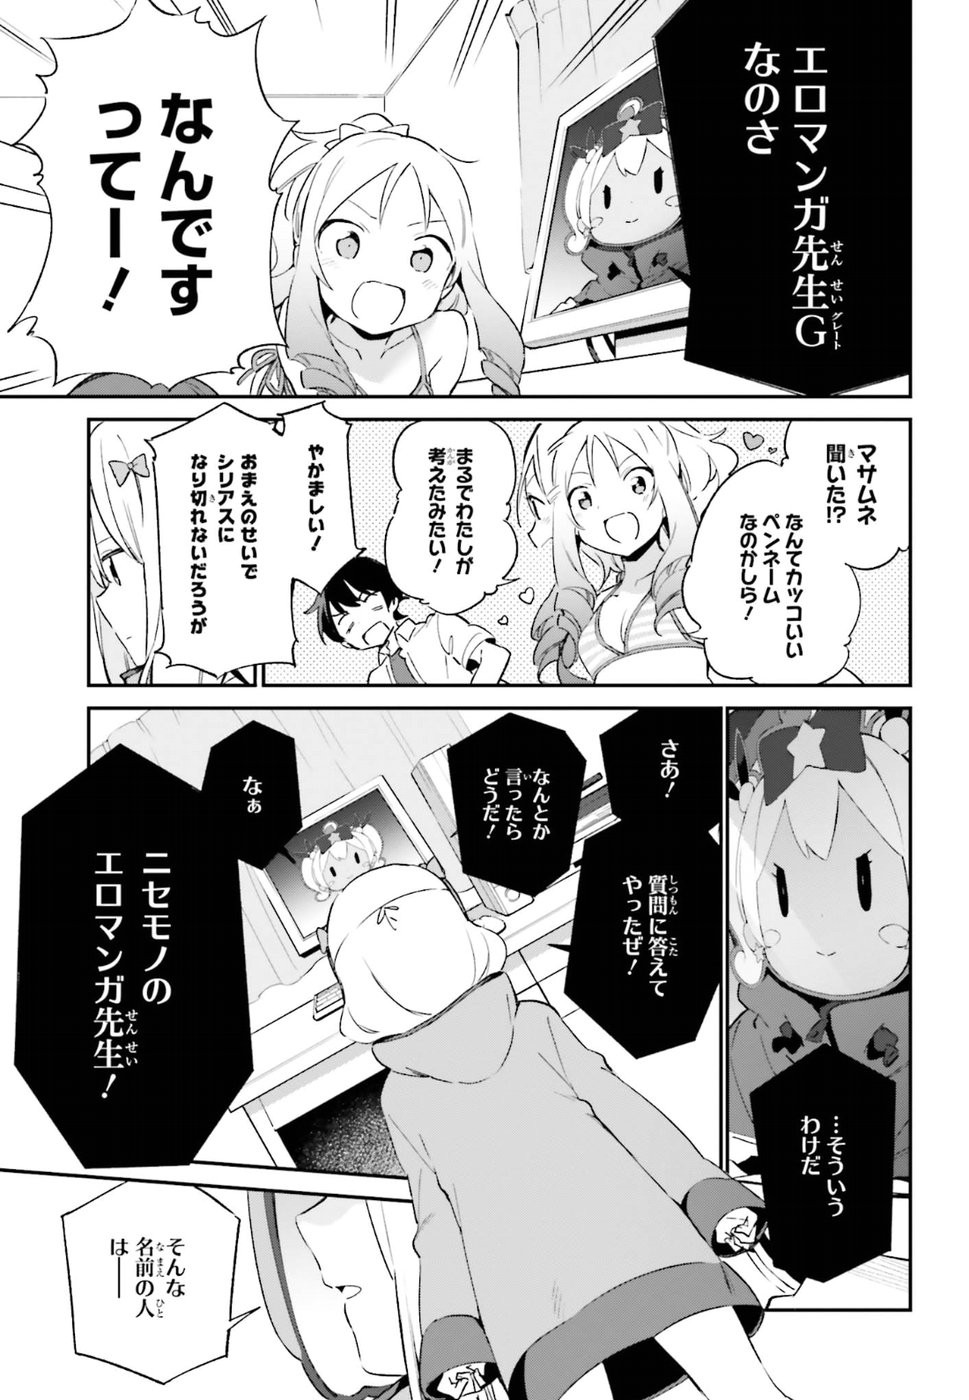 Ero Manga Sensei - Chapter 37 - Page 23